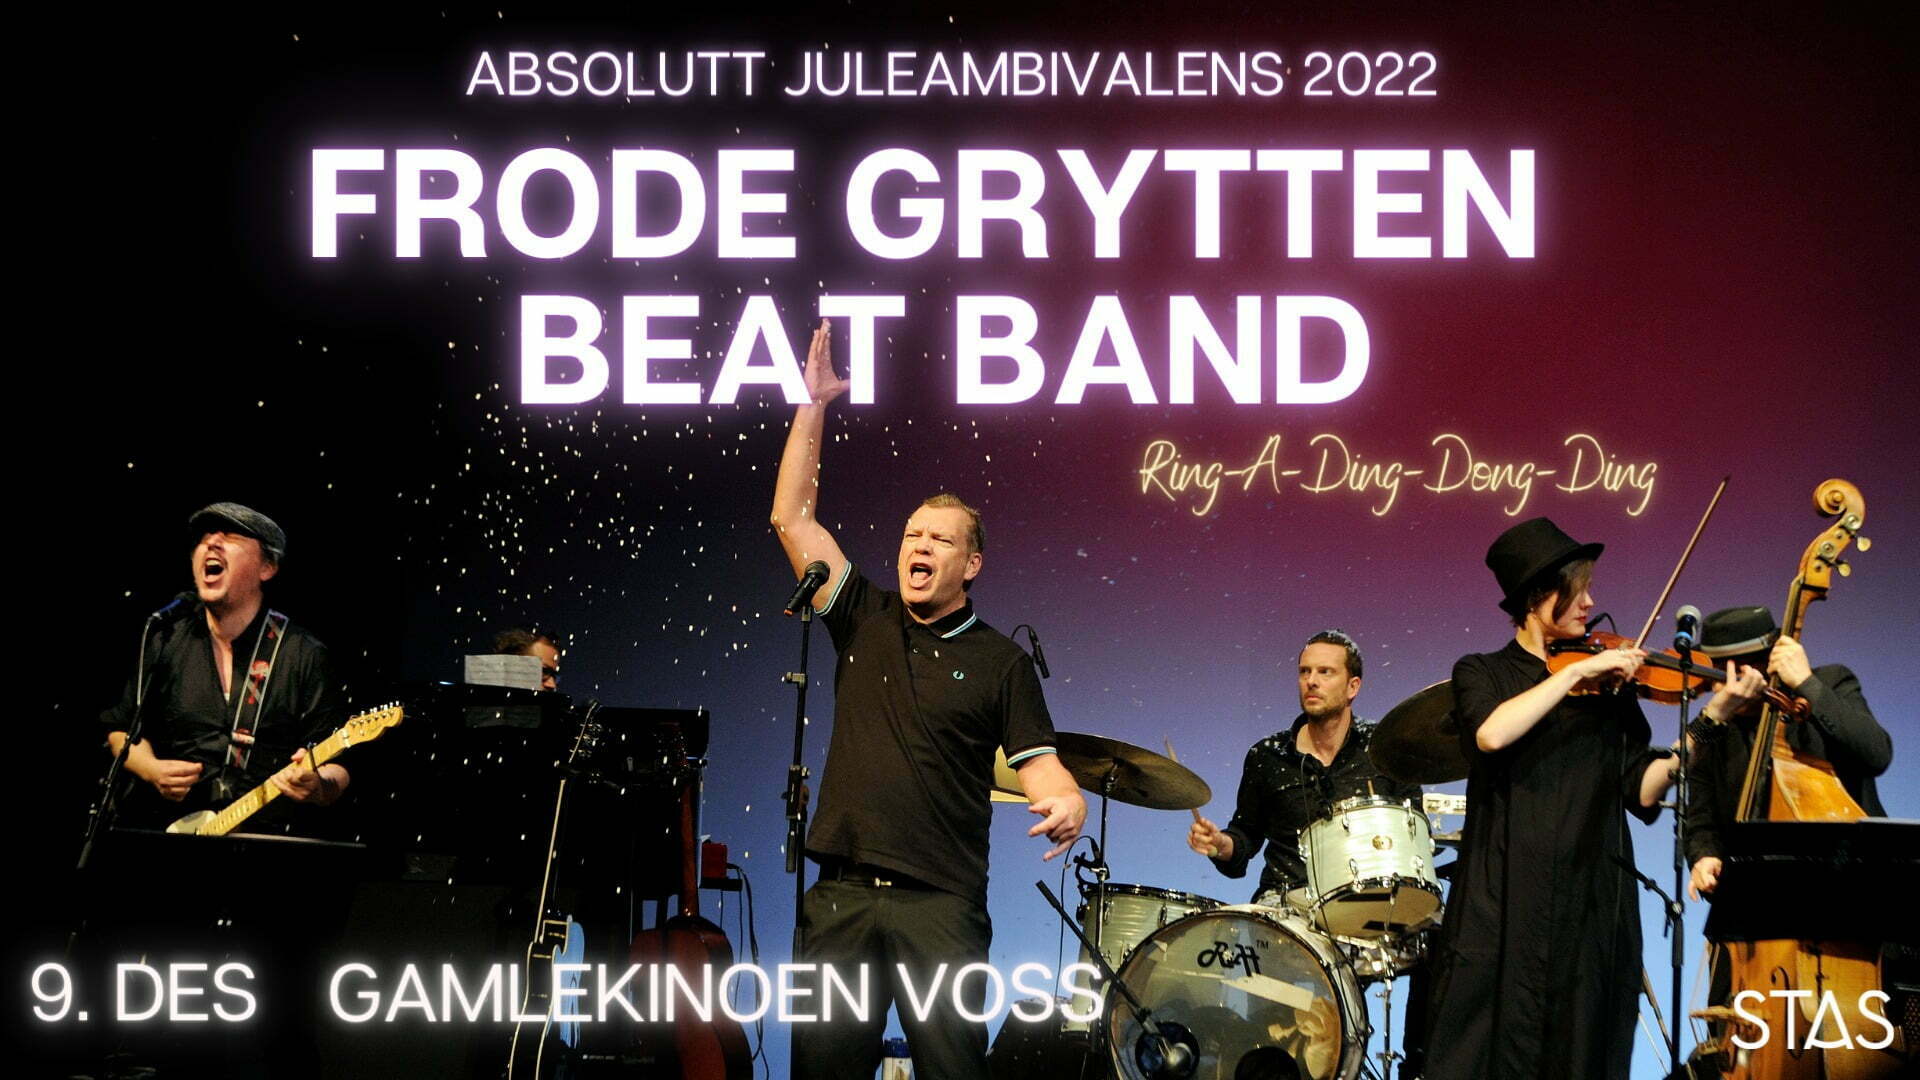 Frode Grytten Beat Band // Voss  - Stas Artist 